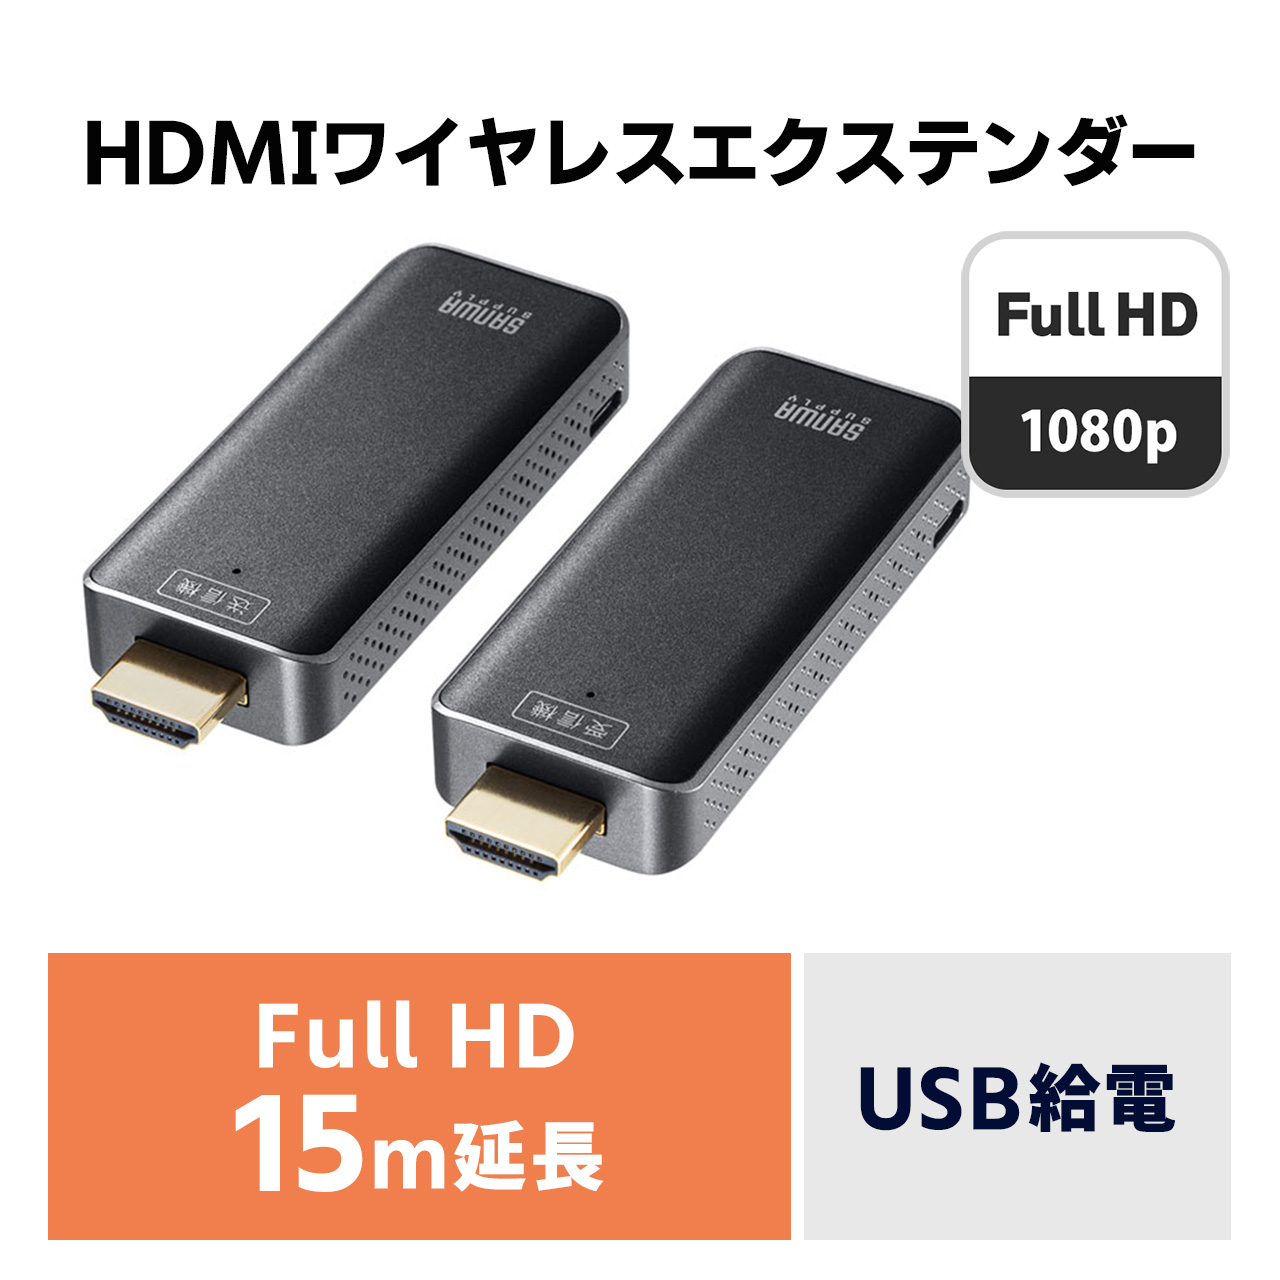 ワイヤレス HDMI エクステンダー 延長器 最大15m フルHD 高画質 無線 送受信 受信機 送信機 セット 高音質 USB給電 挿すだけで使える  かんたん VGA-EXWHD10